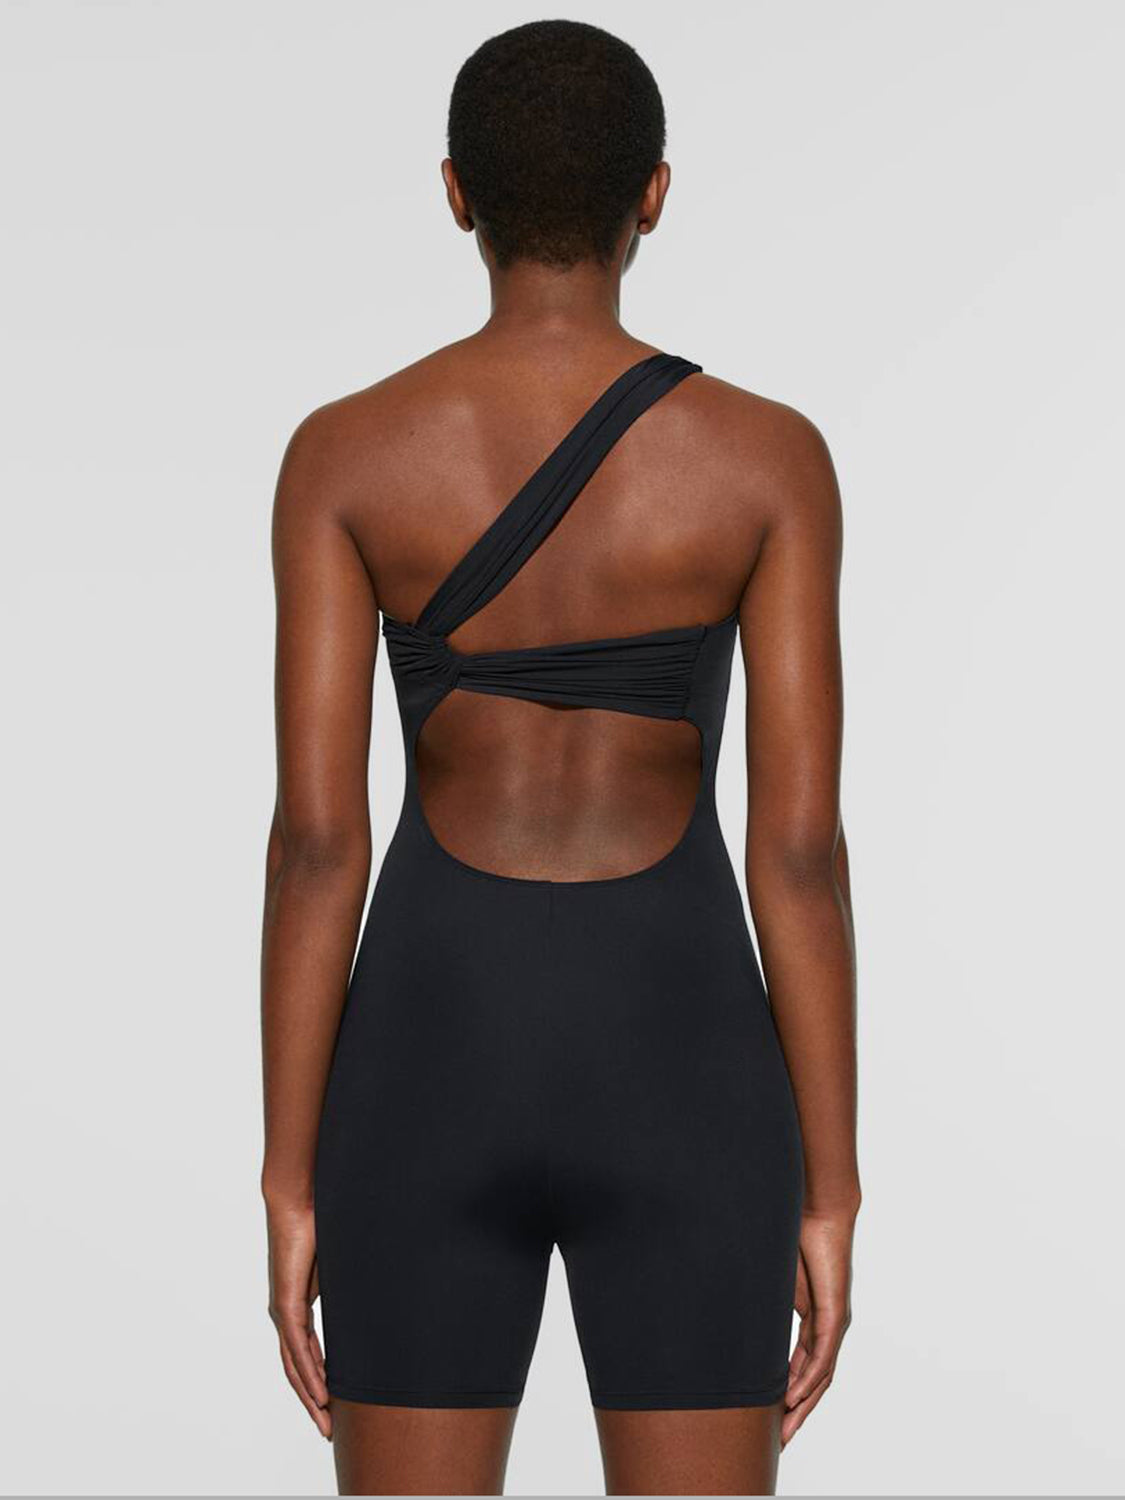 TEEK - Black Single Shoulder Active Shorts Romper JUMPSUIT TEEK Trend   